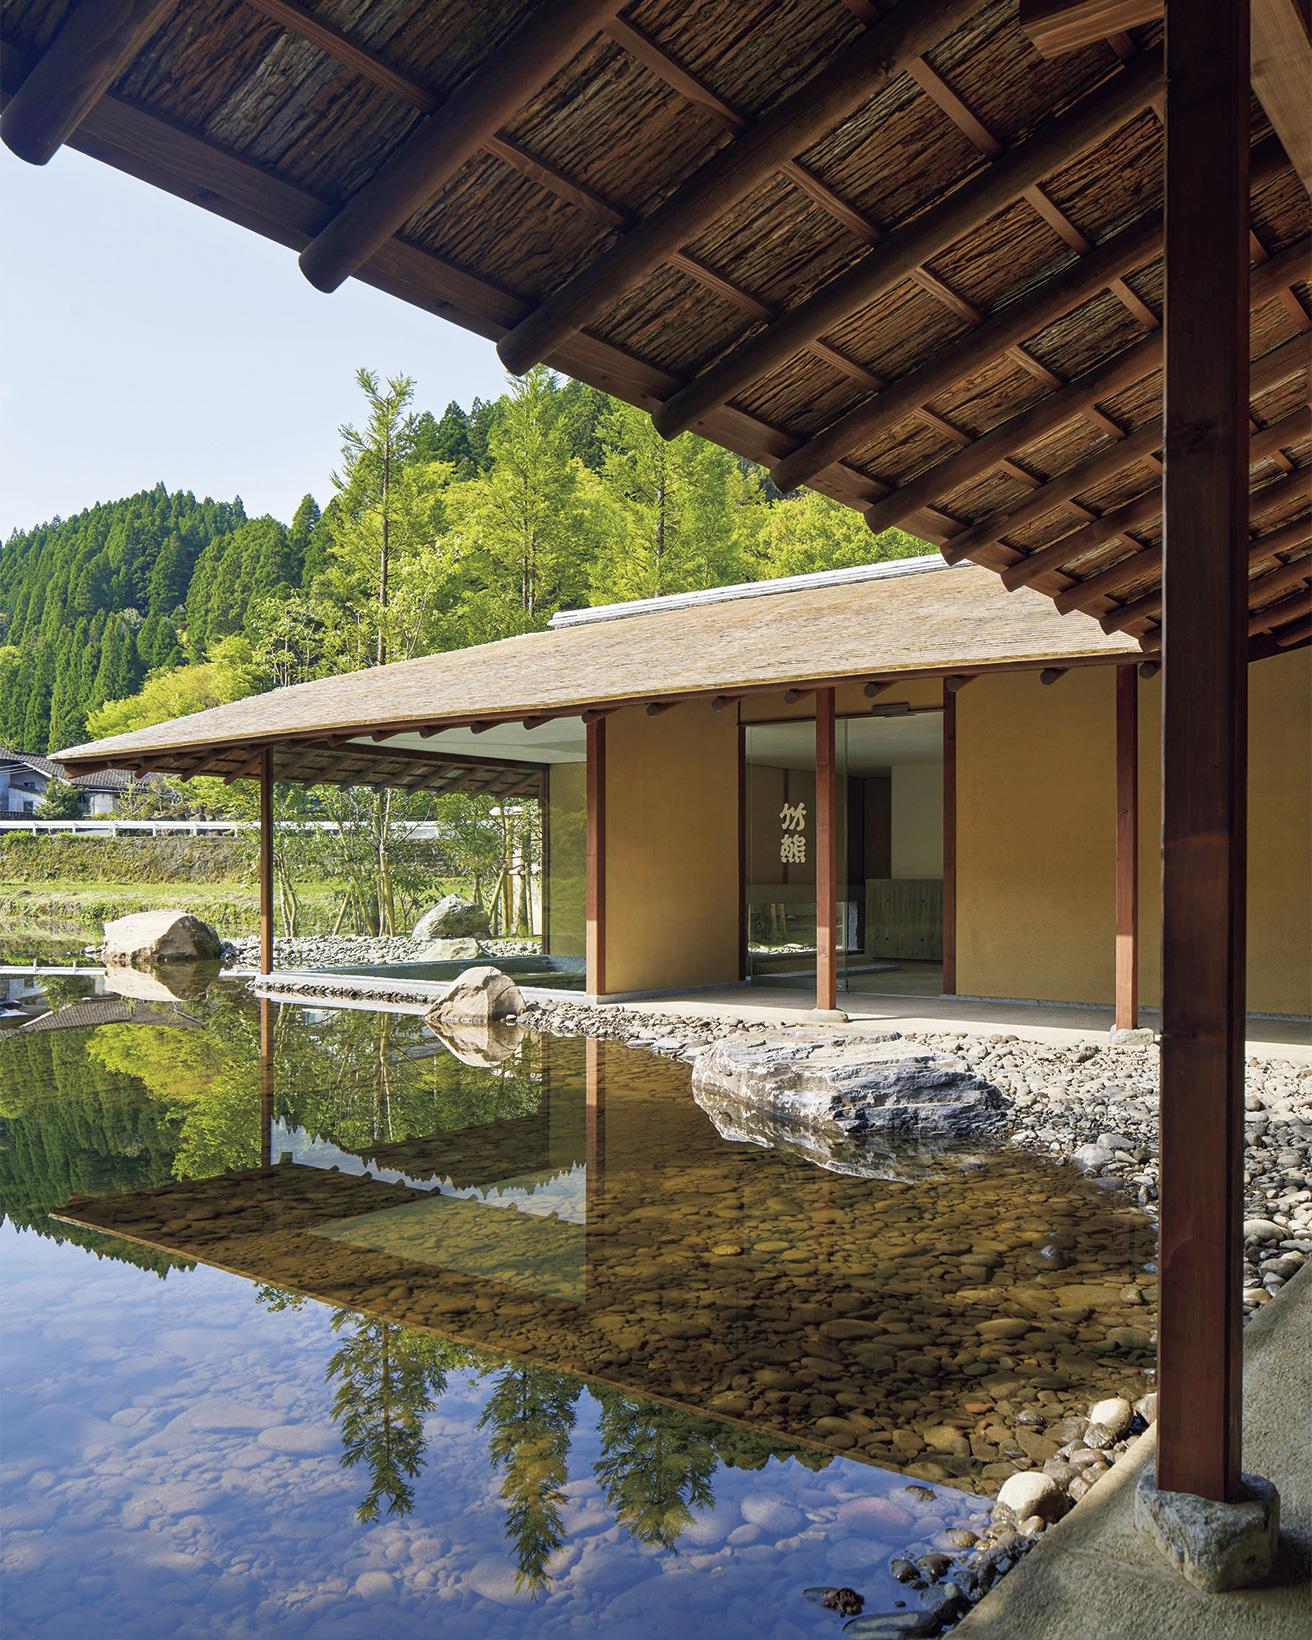 杮葺き屋根に磨き丸太の棟木など伝統的な日本建築の様式を現代の視点で見つめ直した空間。